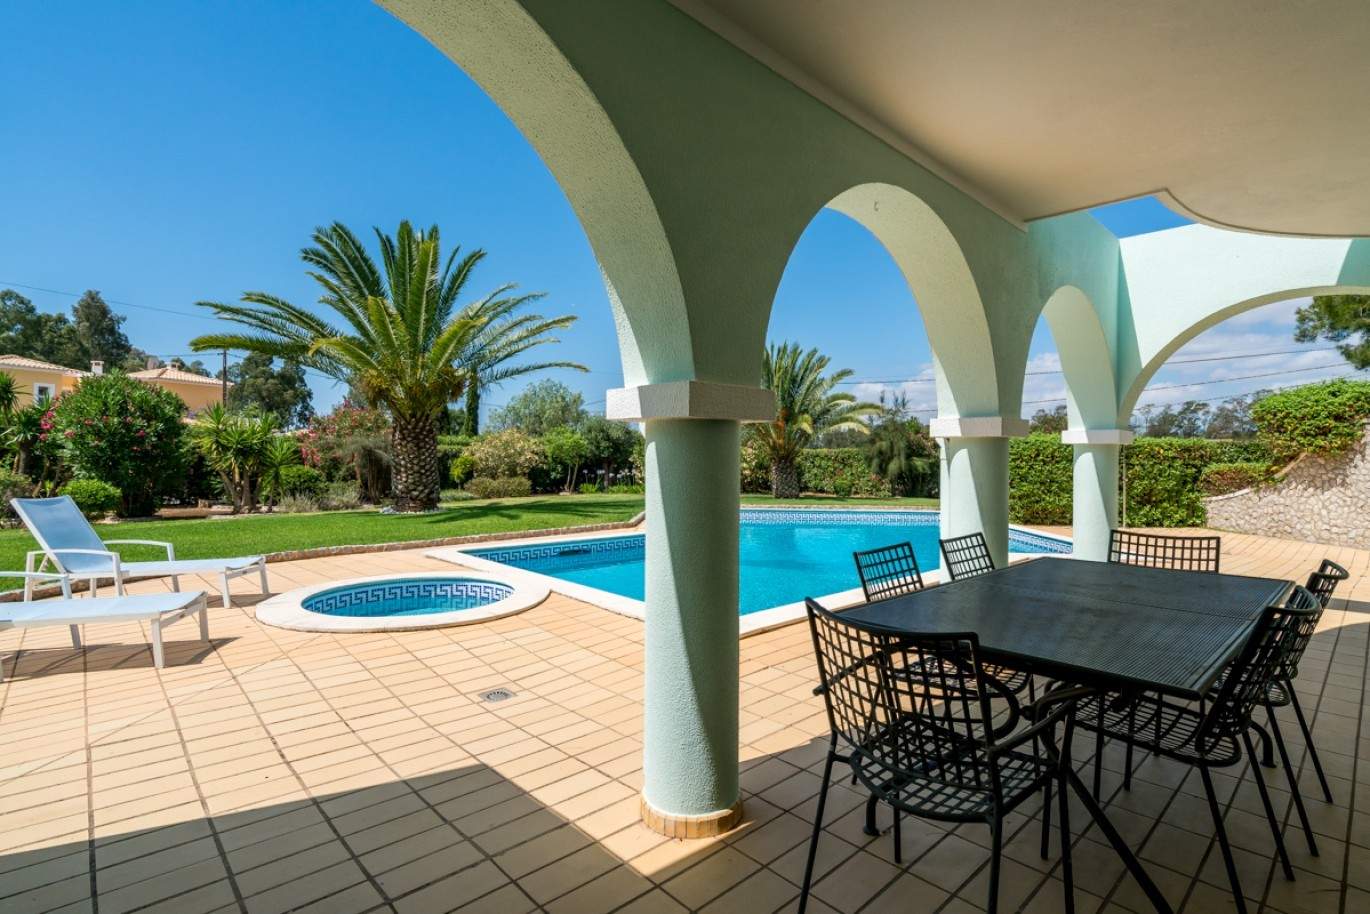 Venda de moradia com piscina na Penina, Alvor, Algarve, Portugal_83413